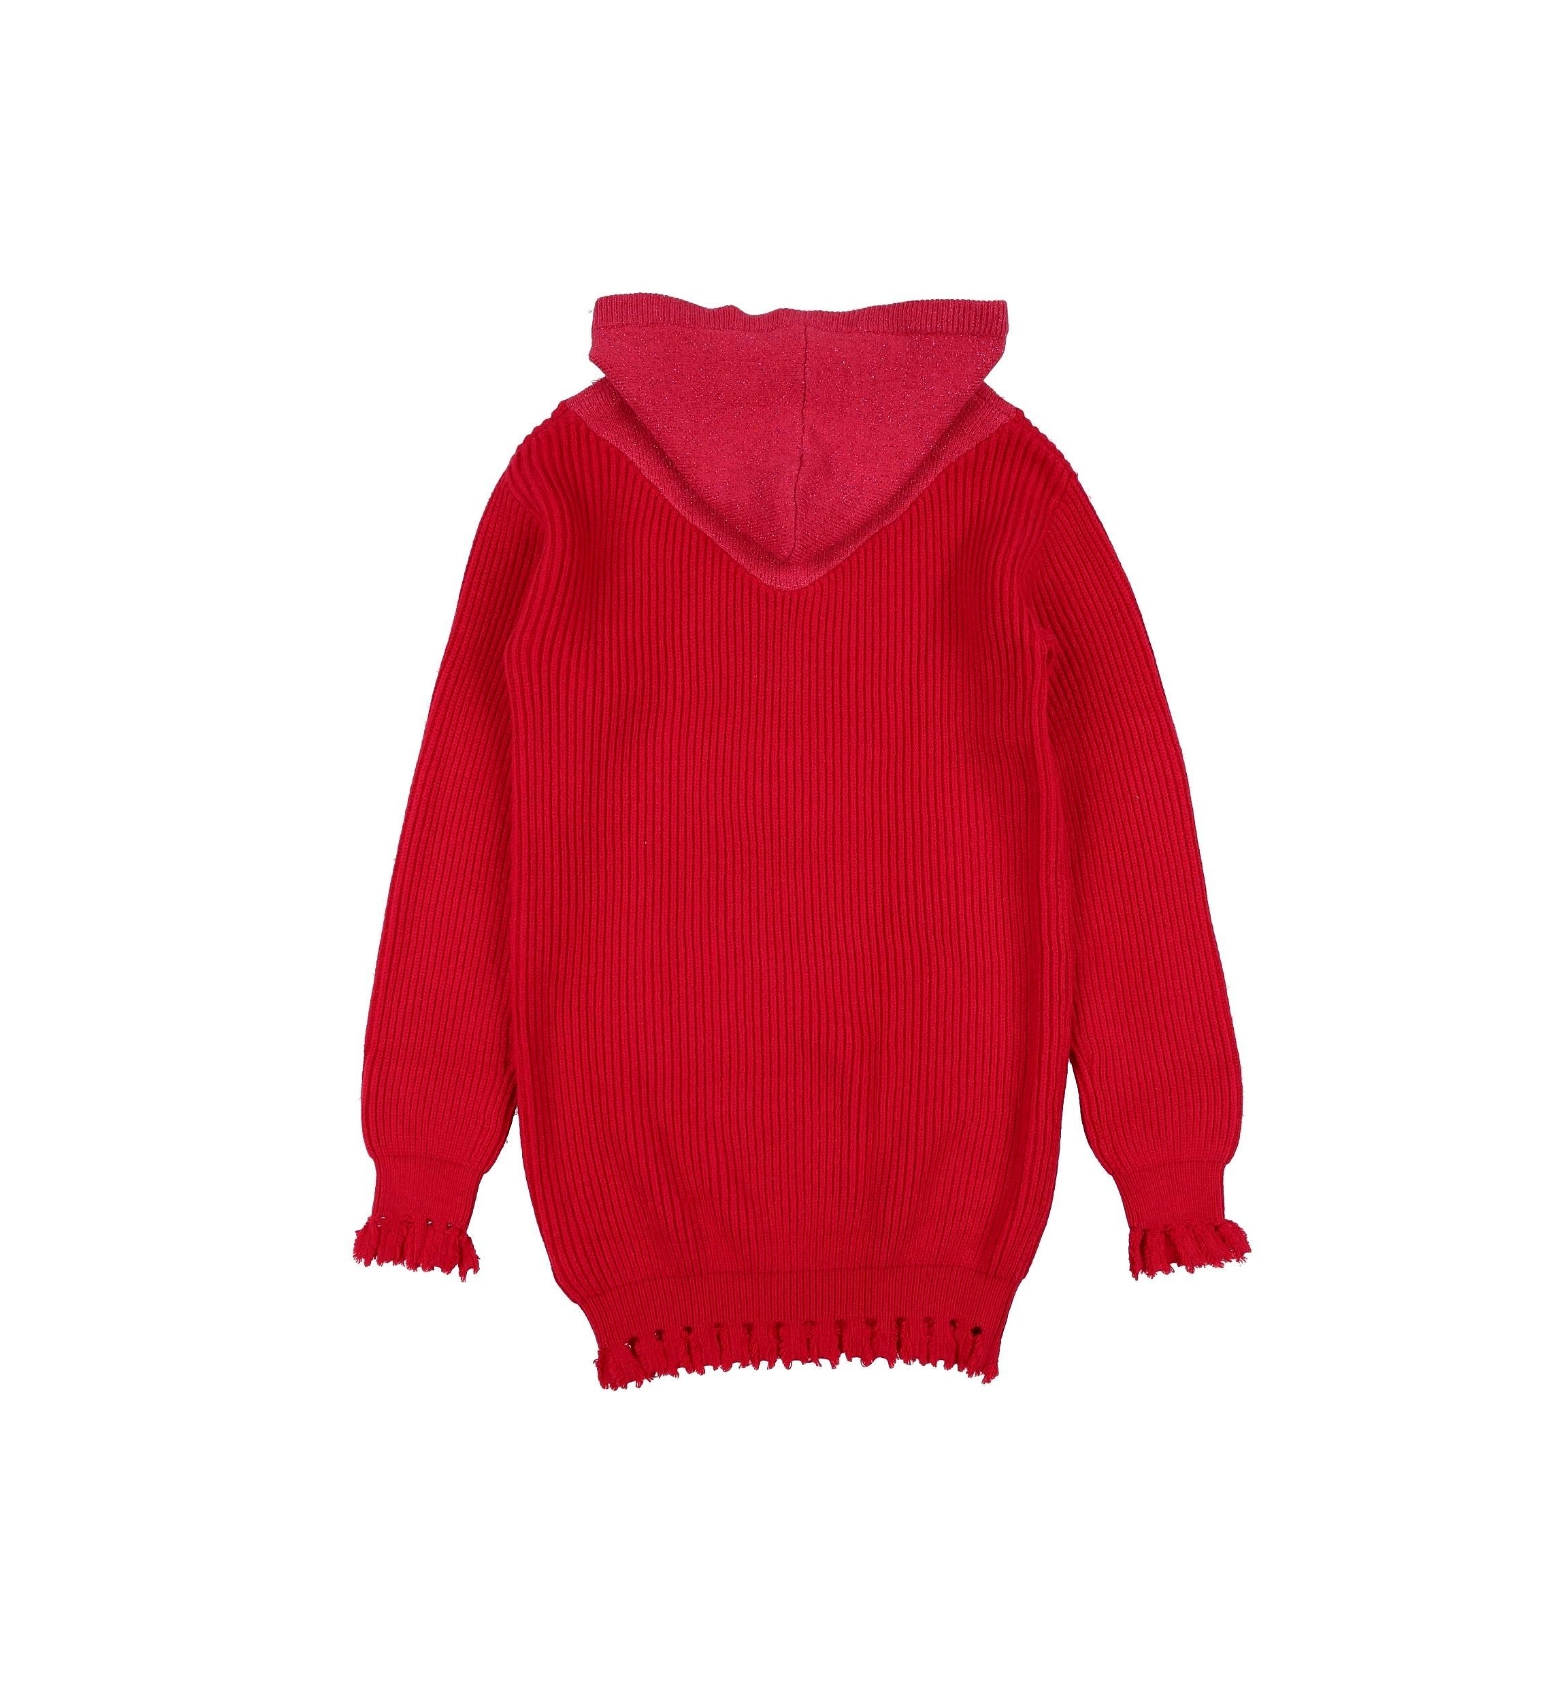 FUN & FUN - Robe pull rouge - 8 ans